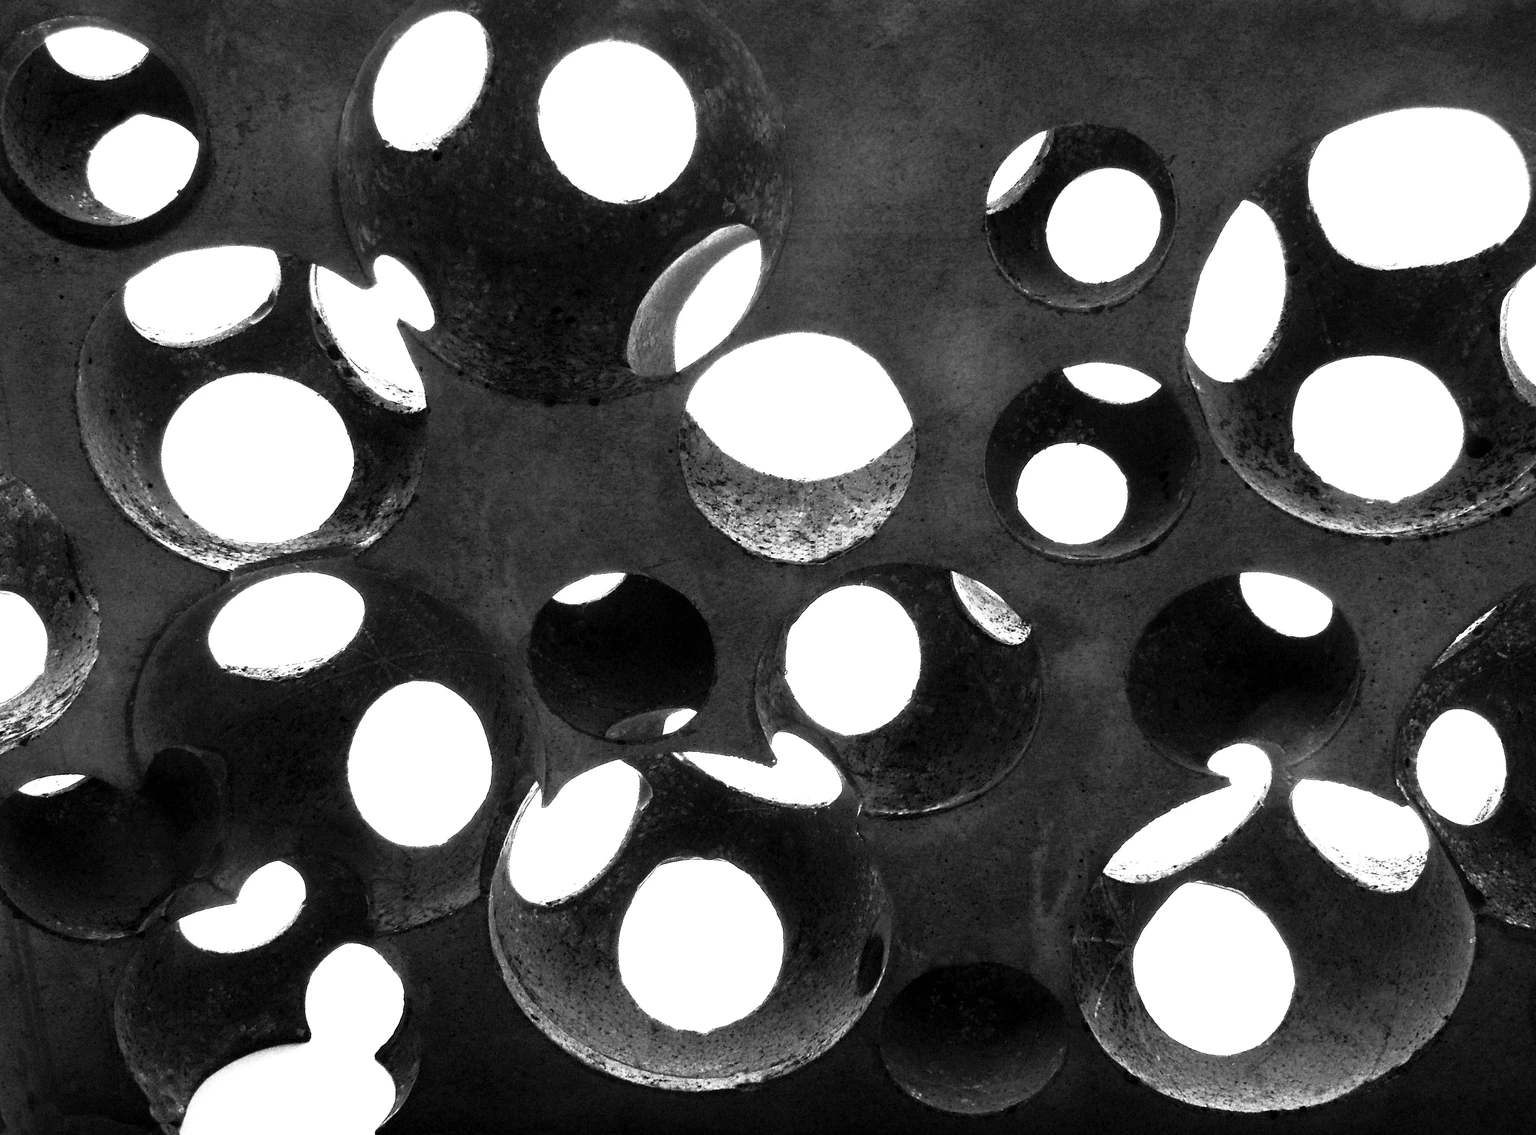 Study with Spheres, 2018 - concrete, 20,5 x 32 x 4,9 cm